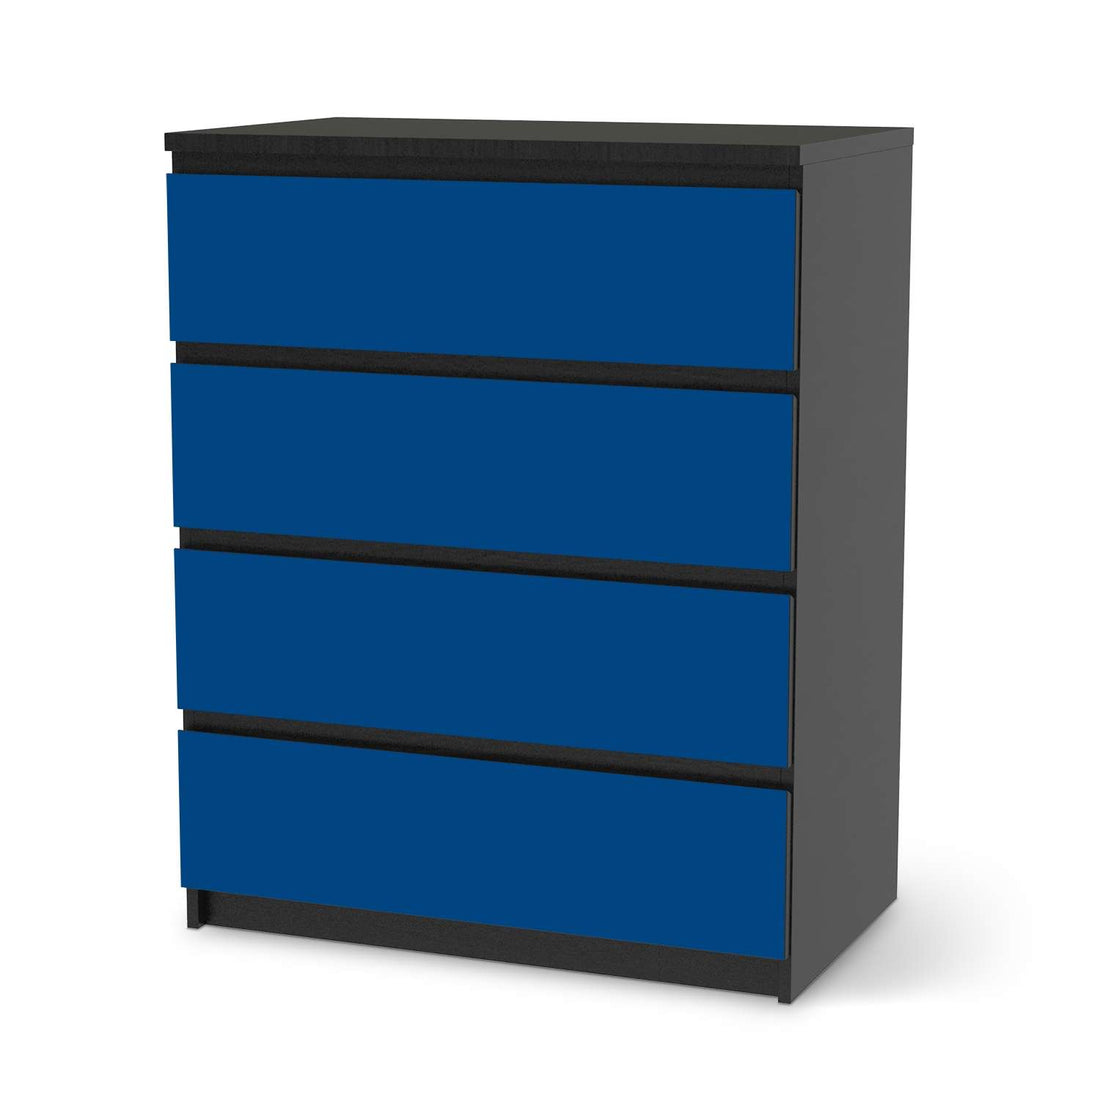 Folie für Möbel Blau Dark - IKEA Malm Kommode 4 Schubladen - schwarz